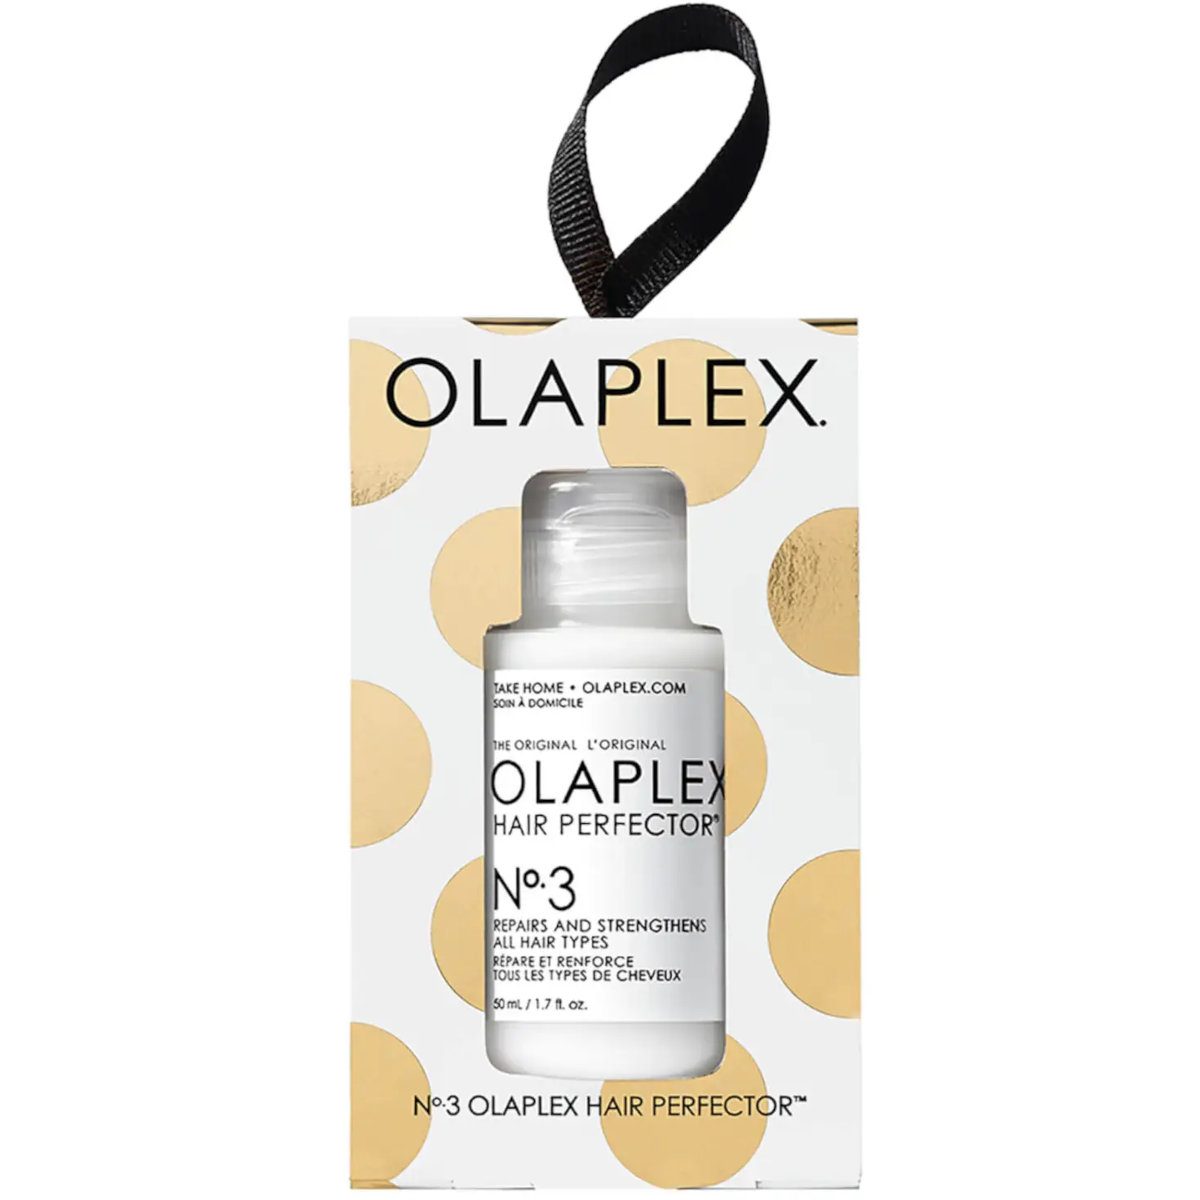 Olaplex N 3 Hair Perfector